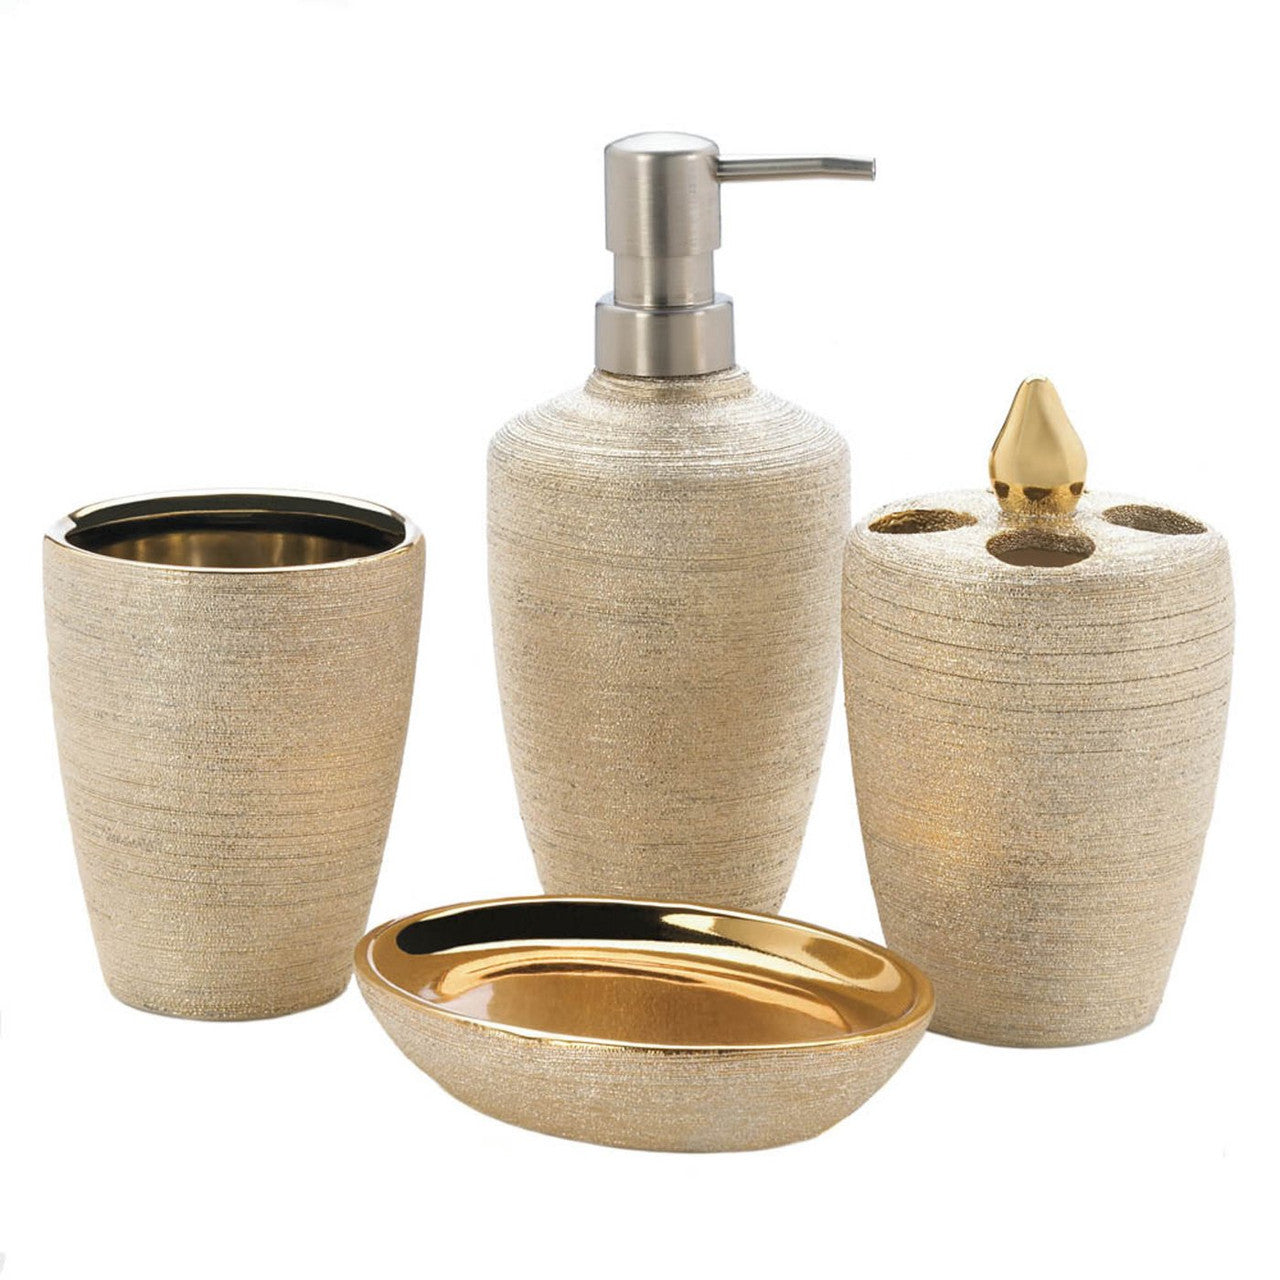 Golden Shimmer Porcelain Bath Set - Almondscove